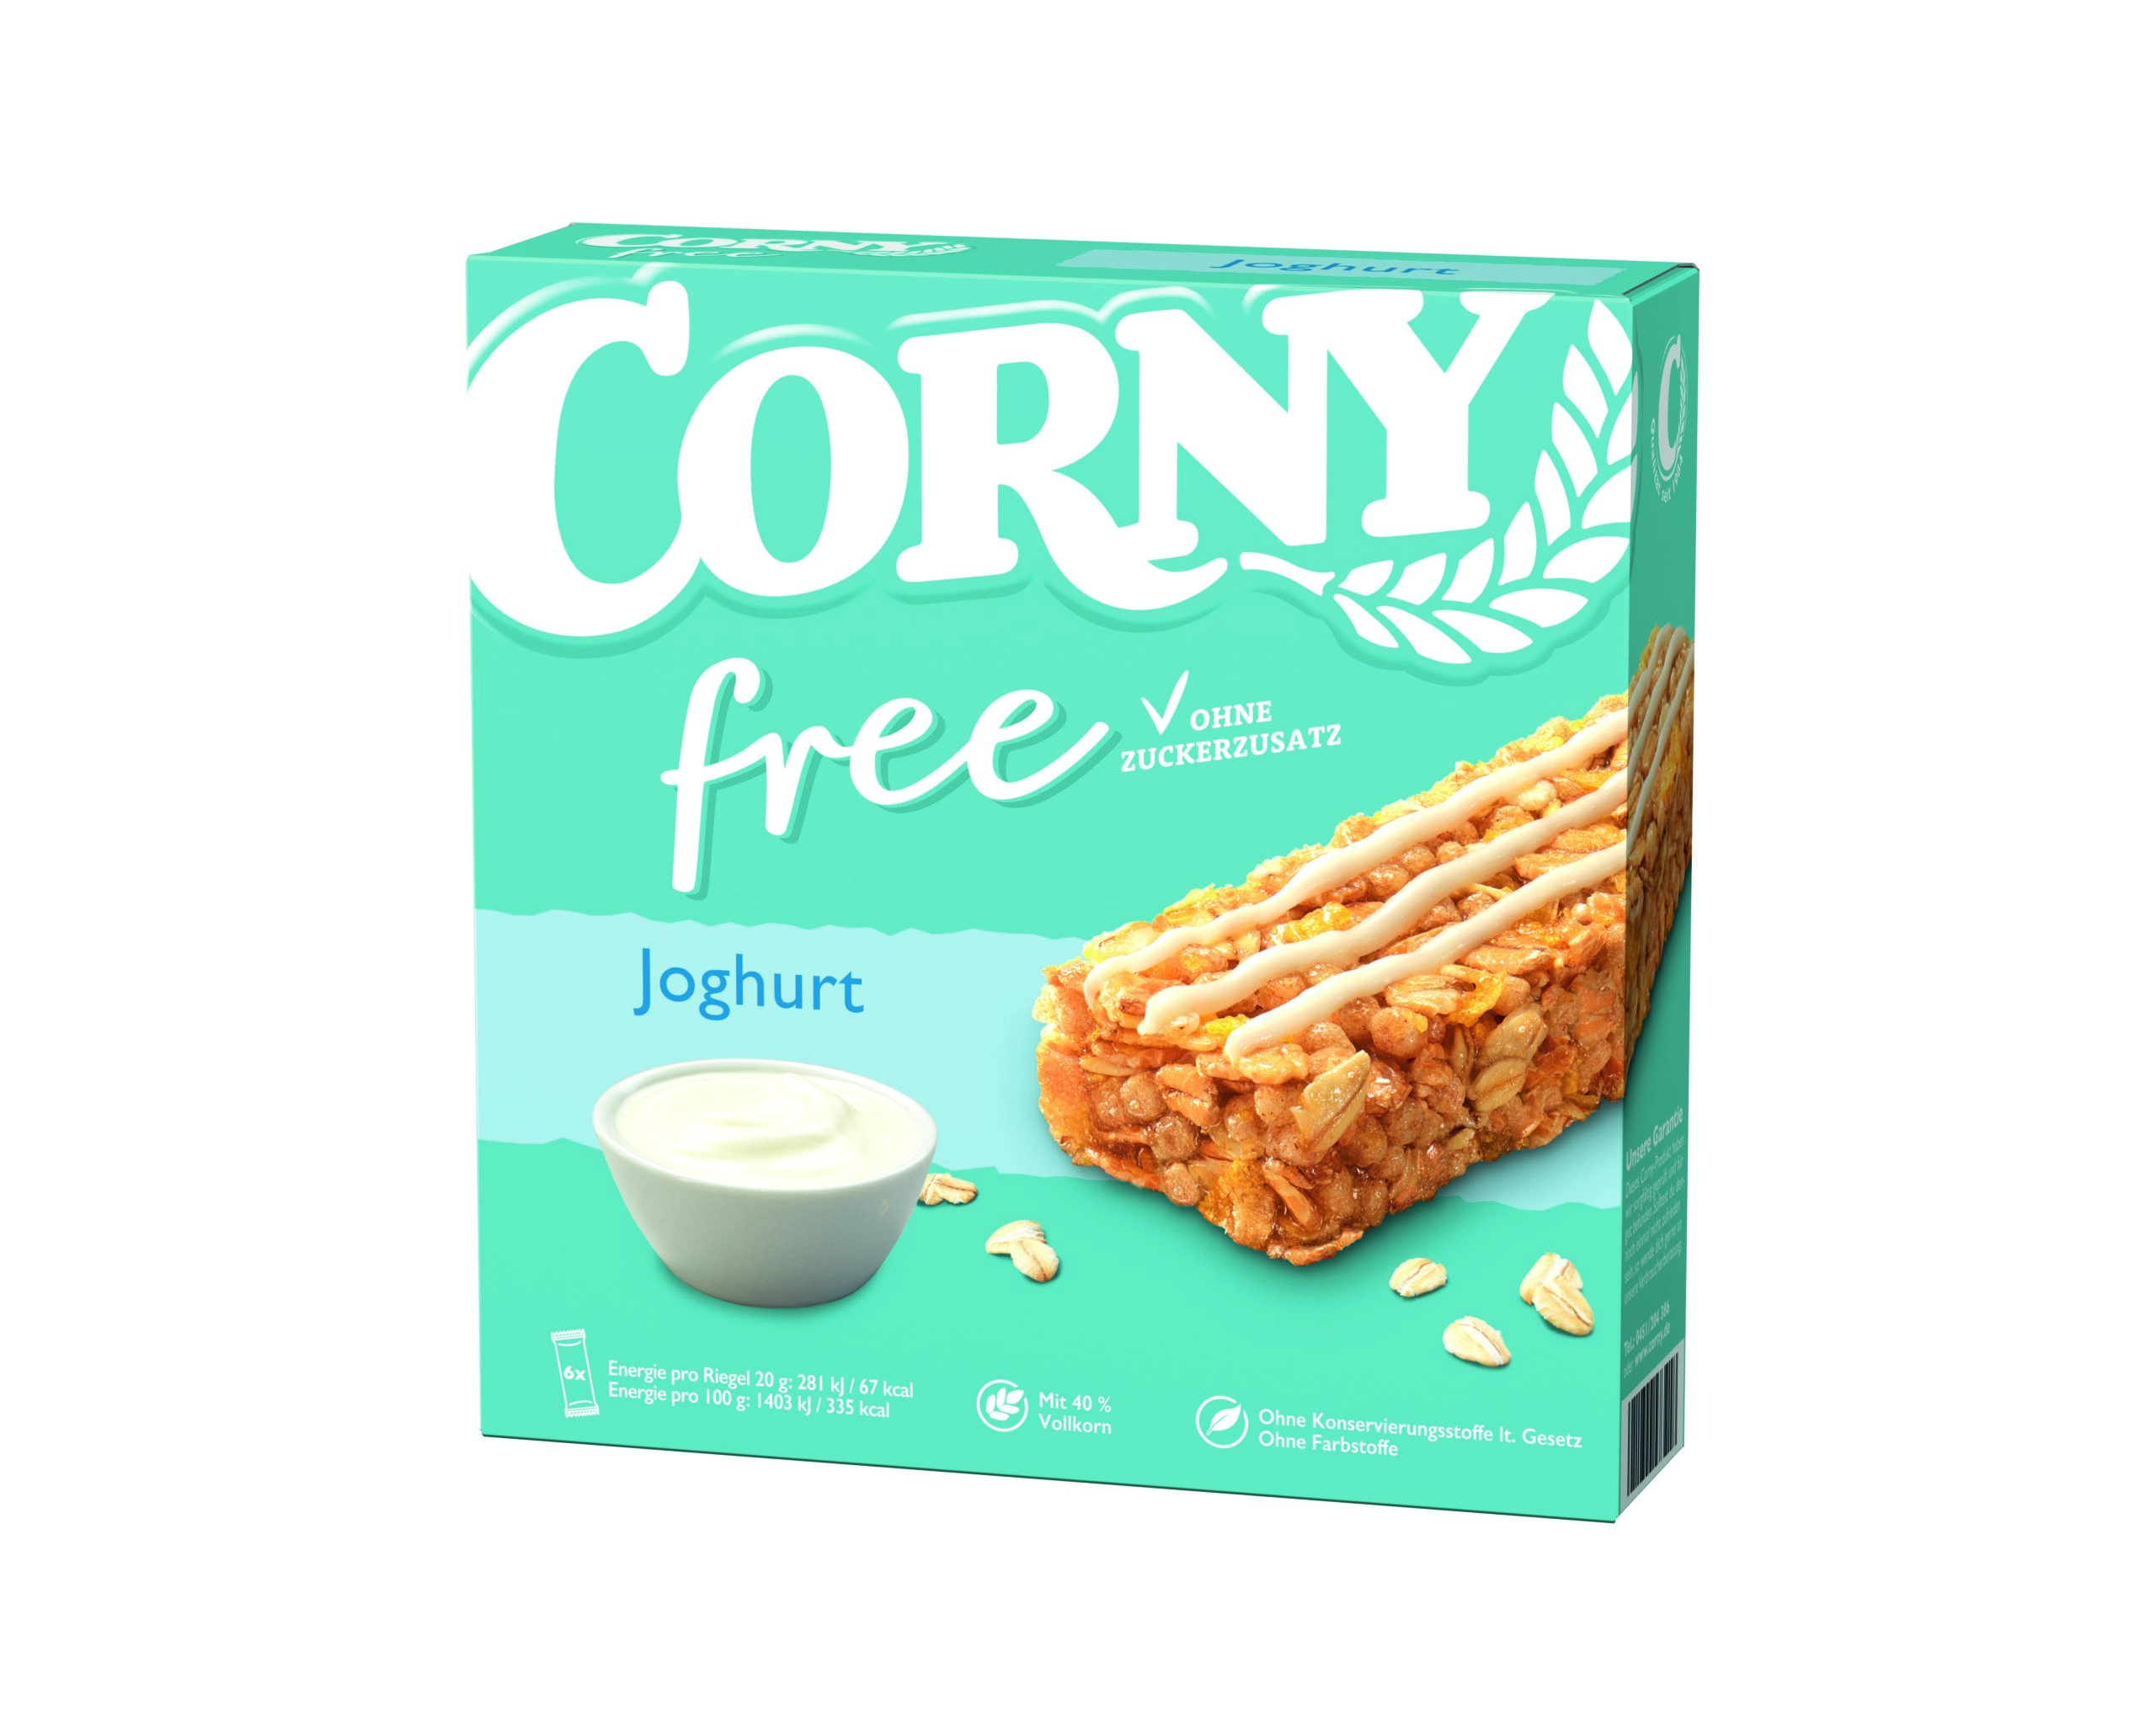 Corny Free Joghurt 6x20g Packung